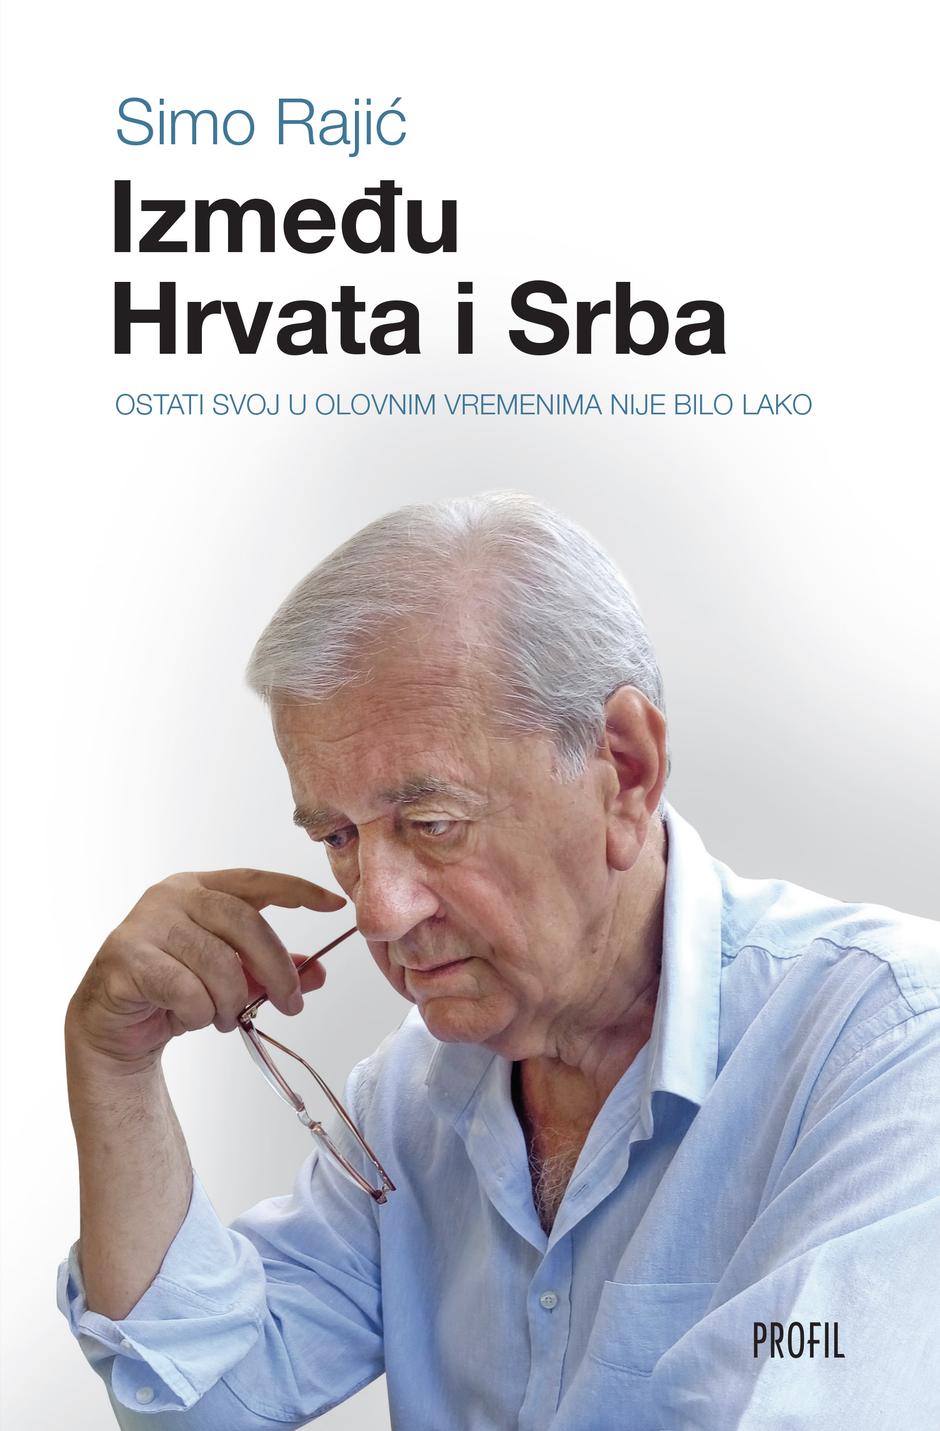 Simo Rajić | Author: PROMO